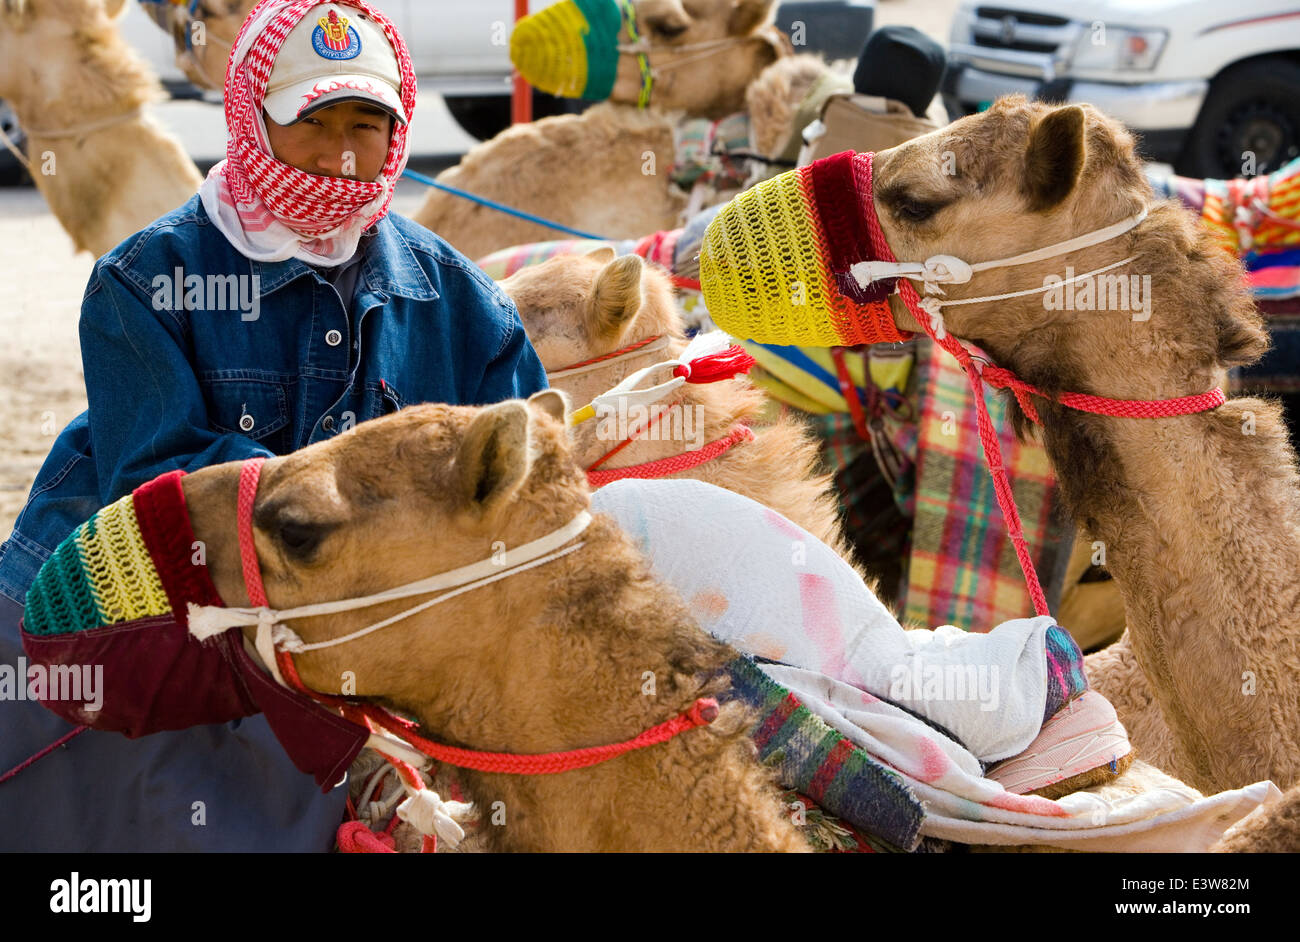 Qatar, Doha, les formateurs et les courses de chameaux Banque D'Images